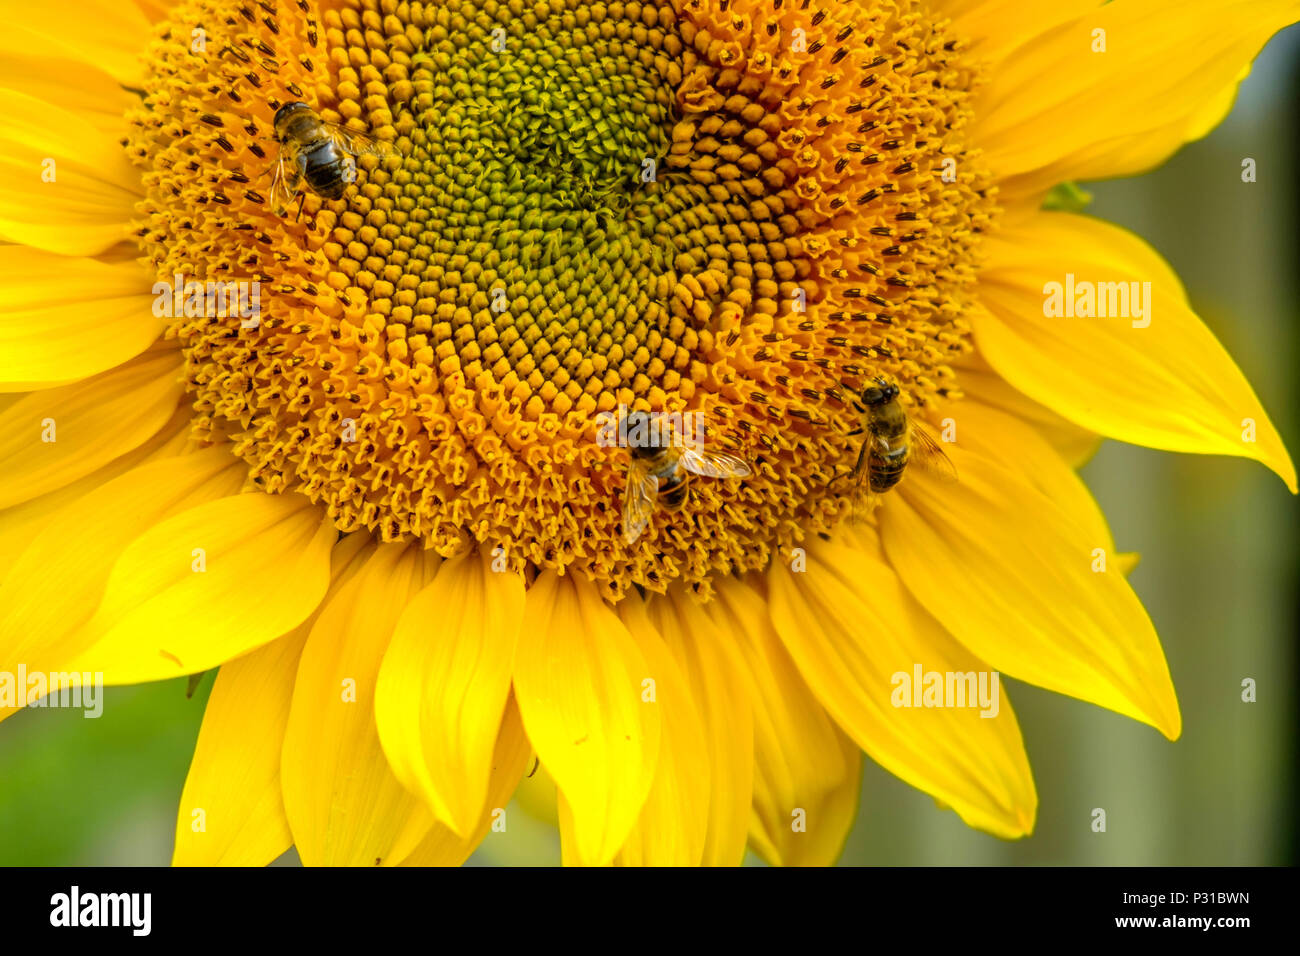 Trois abeilles travaillent sur un tournesol dans un jardin dans la ville belge de Mol. La fleur est magnifique et montre en fleurs, des couleurs vives. Banque D'Images